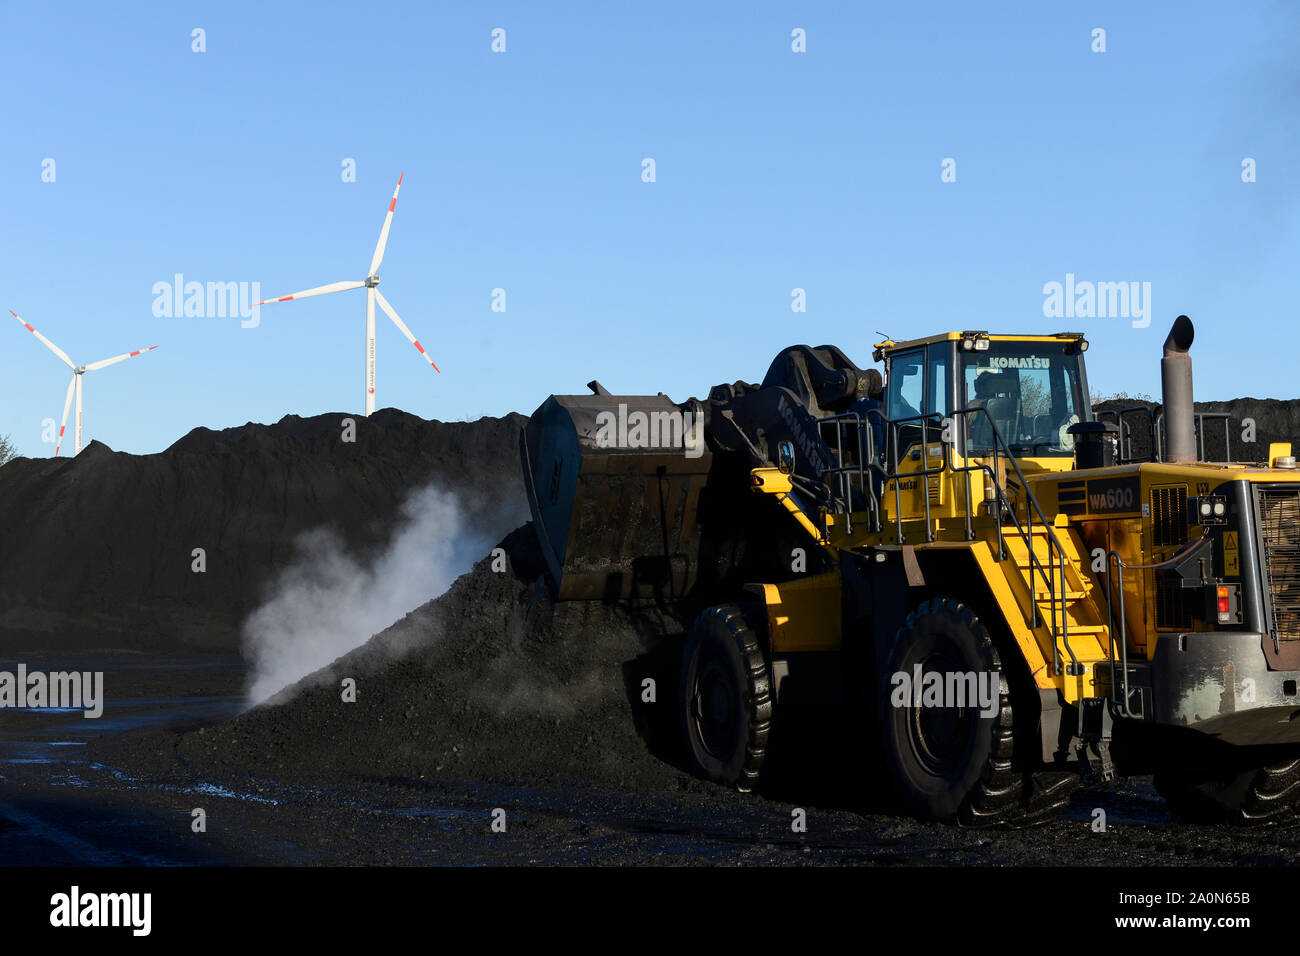 Allemagne, Hambourg, Hansaport importer du charbon et du minerai d'acier et de charbon des centrales électriques, stockage du charbon contraste avec l'éolienne de fournisseur d'électricité municipales Hamburg Energie Banque D'Images